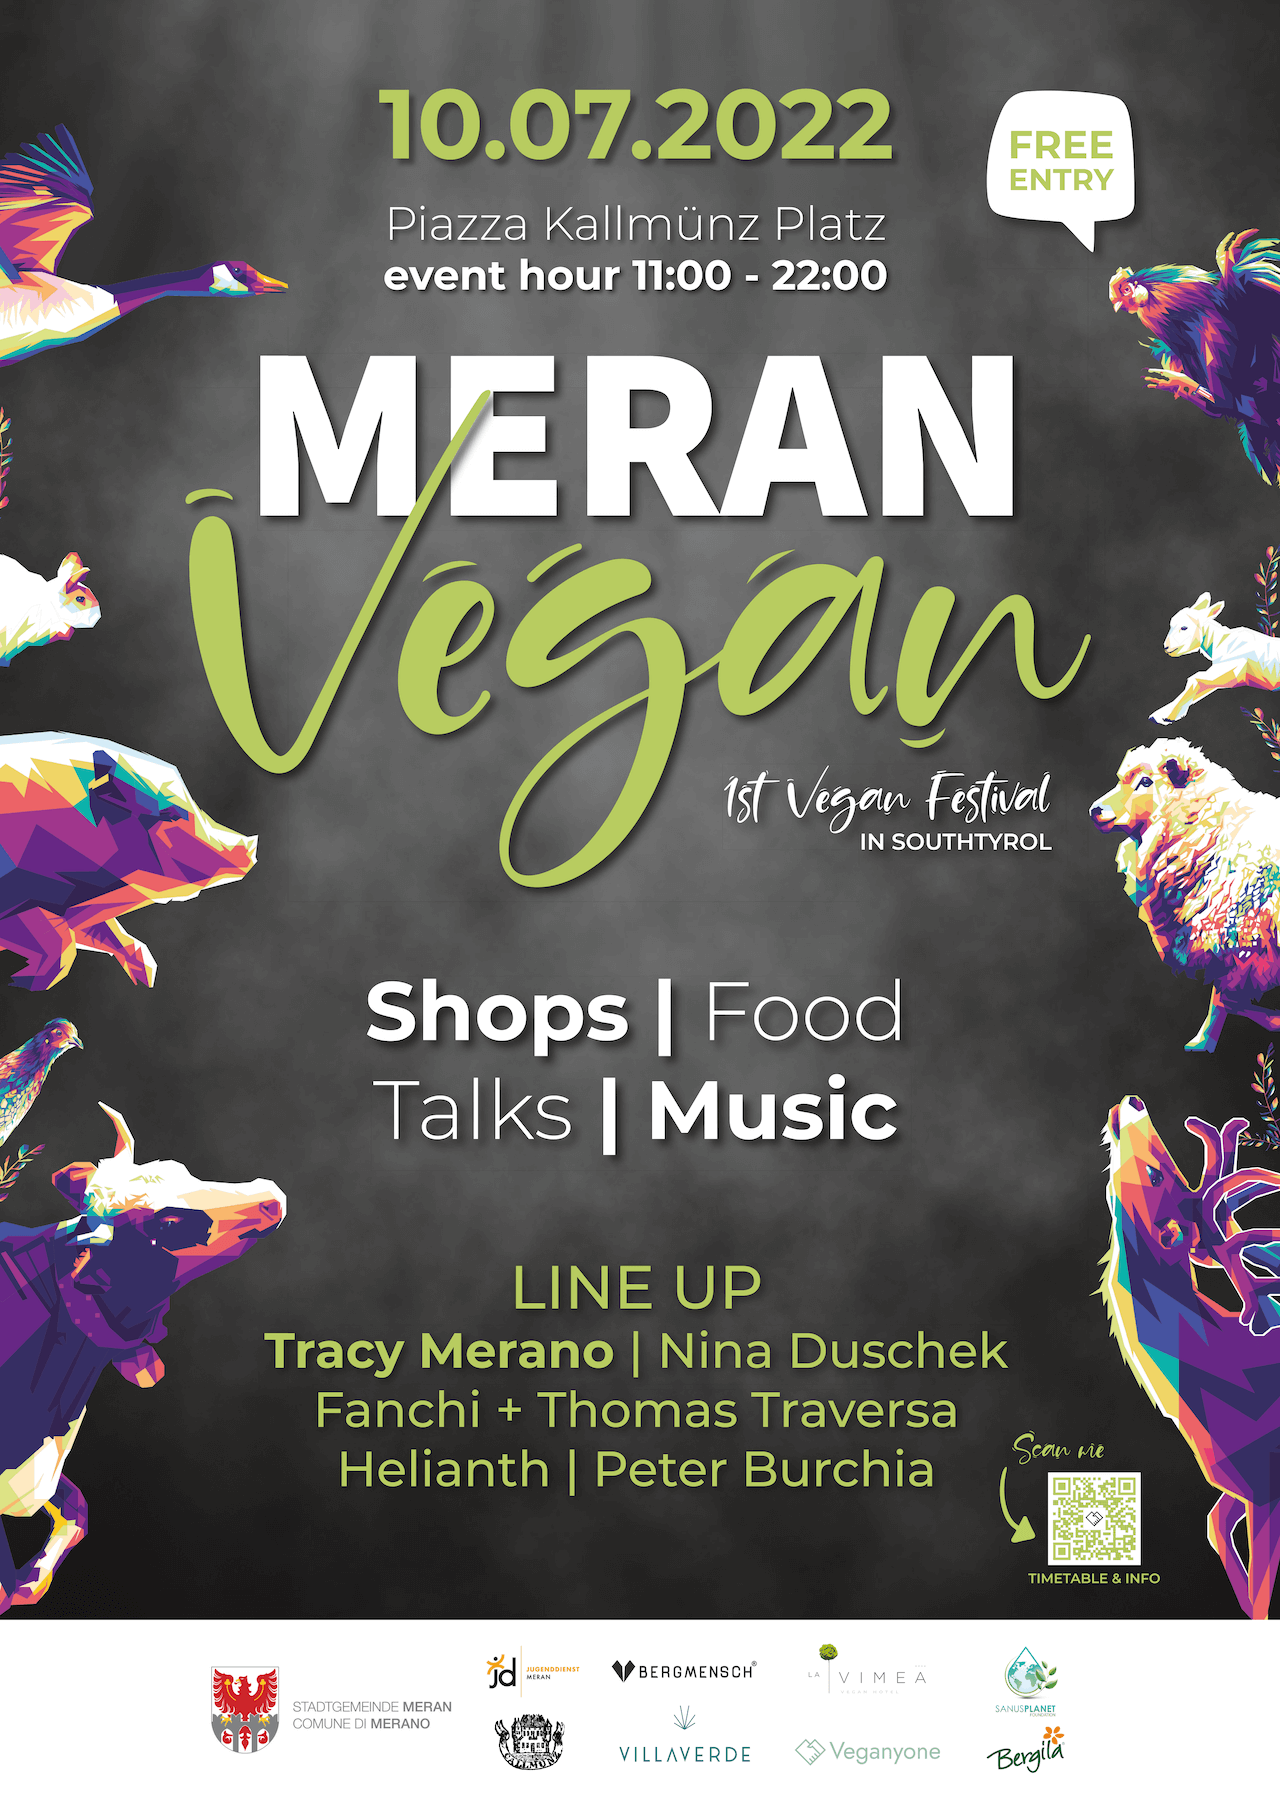 Eine gute Möglichkeit, sie (zum ersten Mal?) konkret mit dem Veganismus auseinanderzusetzen: Das Festival „Meran Vegan” findet heuer zum ersten Mal statt, mit Informationstransfer und viel Live-Musik.